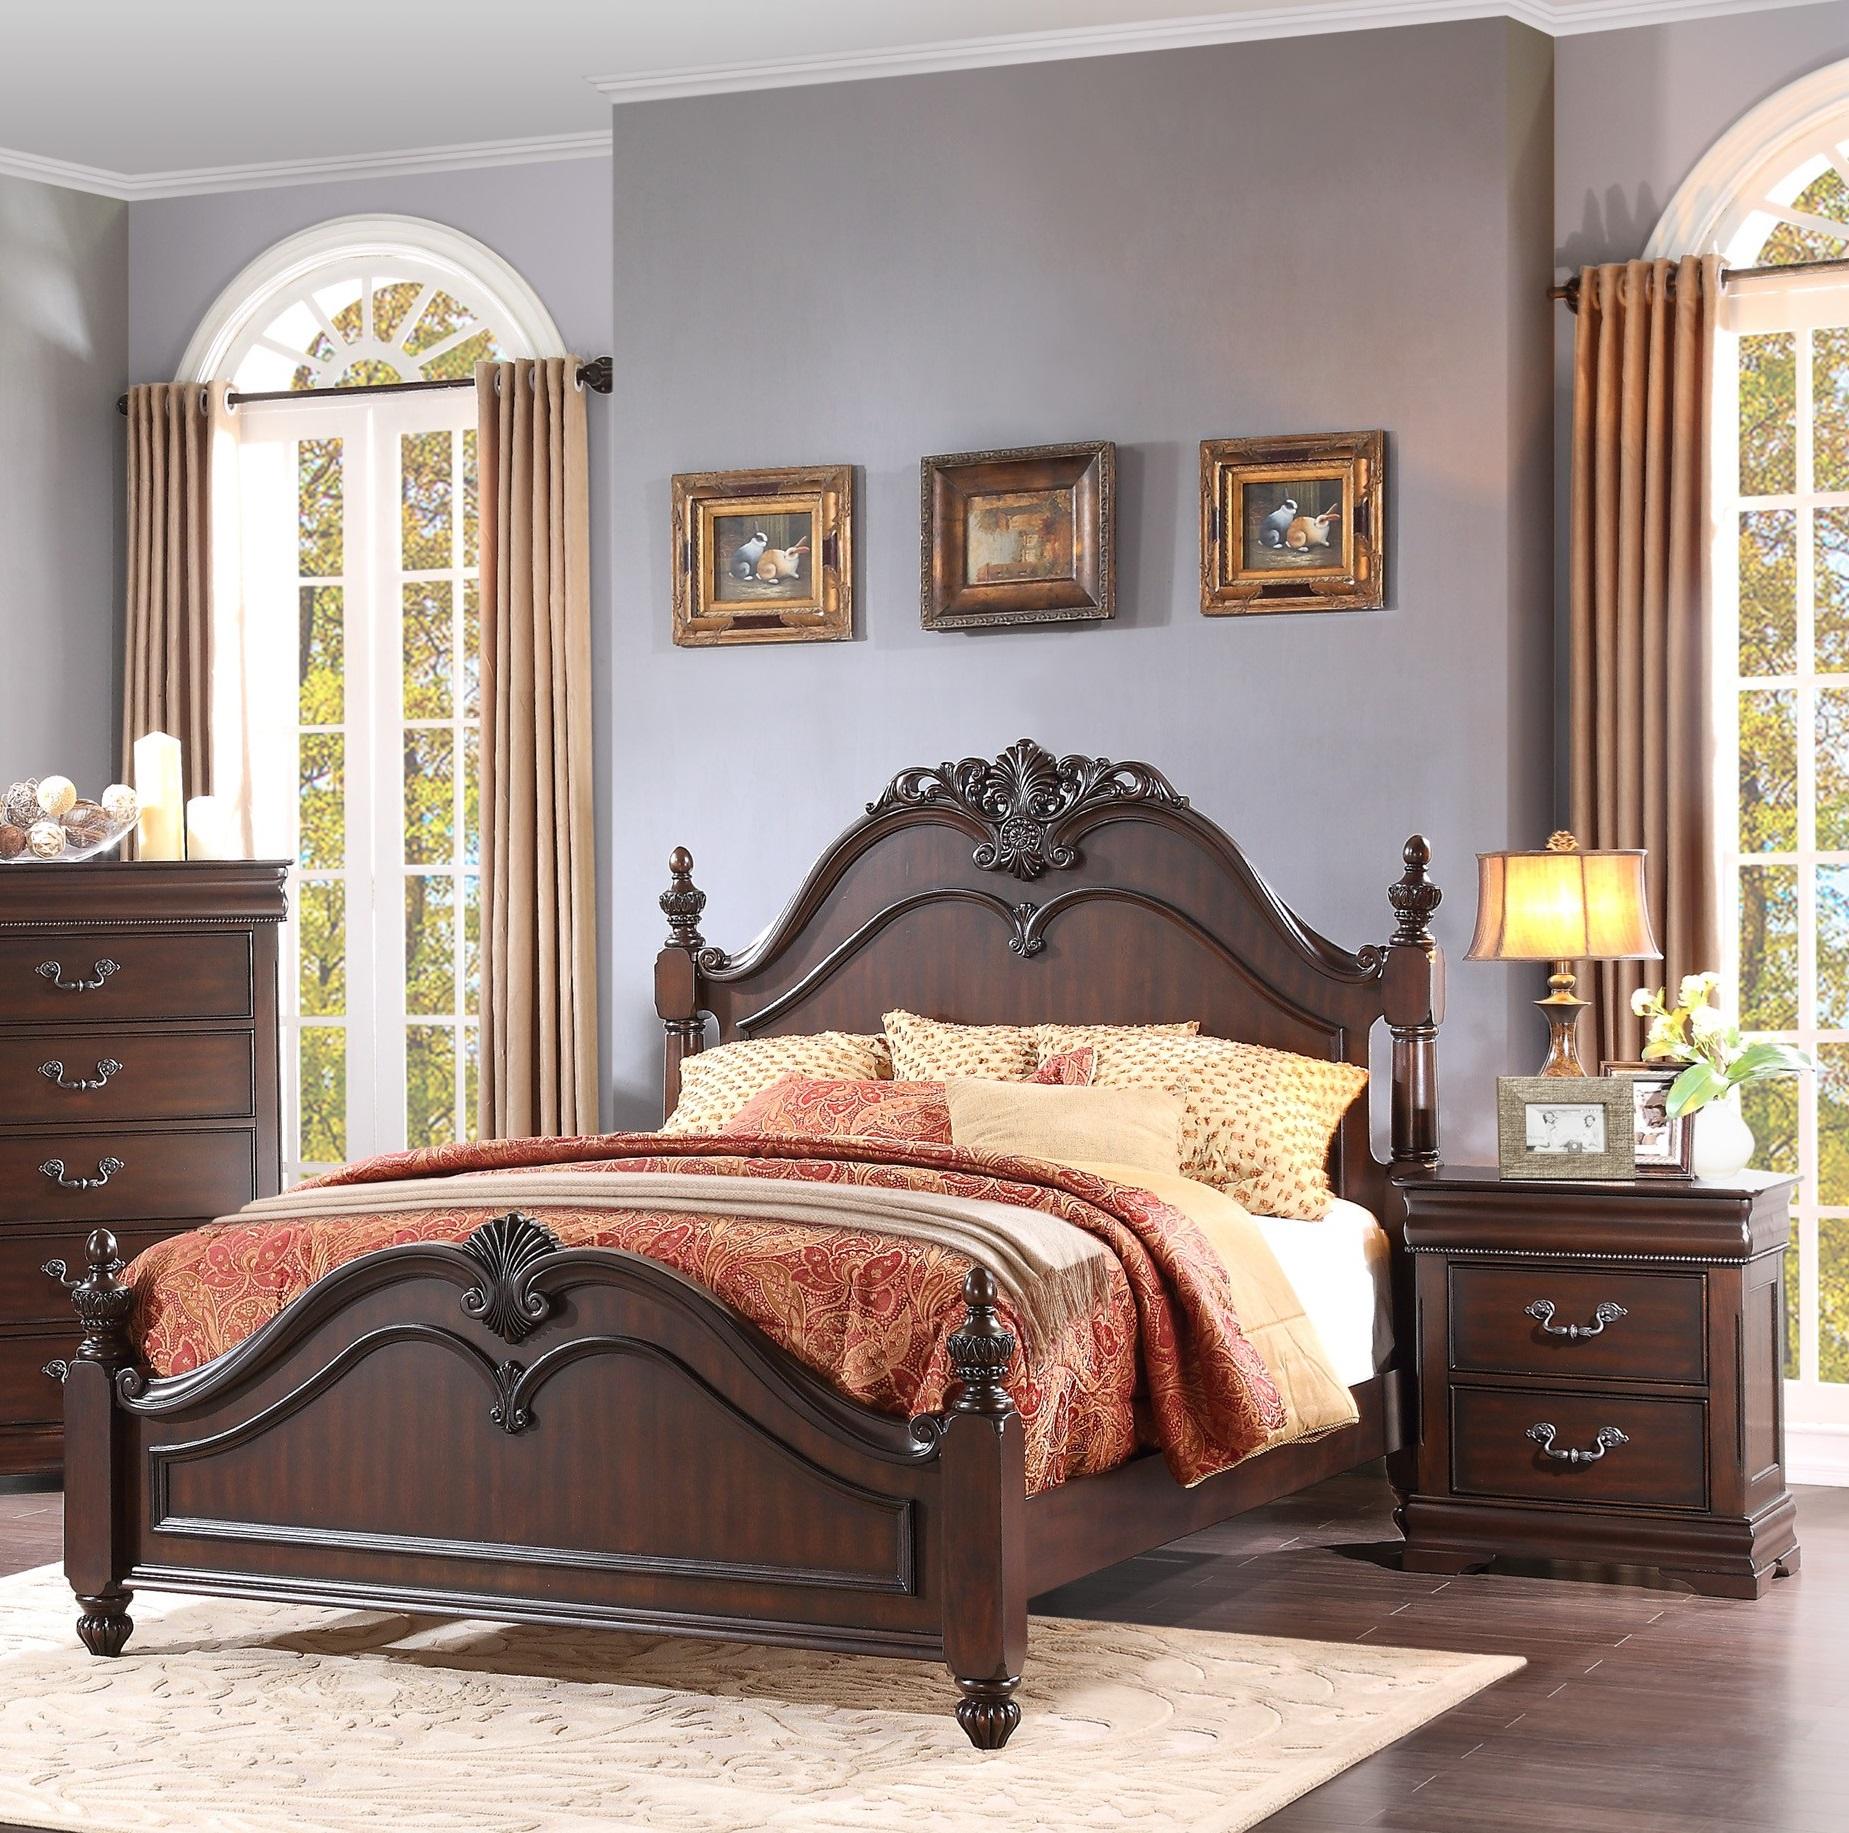 

    
Traditional Dark Cherry Wood Queen Bedroom Set 3pcs Homelegance 1869-1* Mont Belvieu
